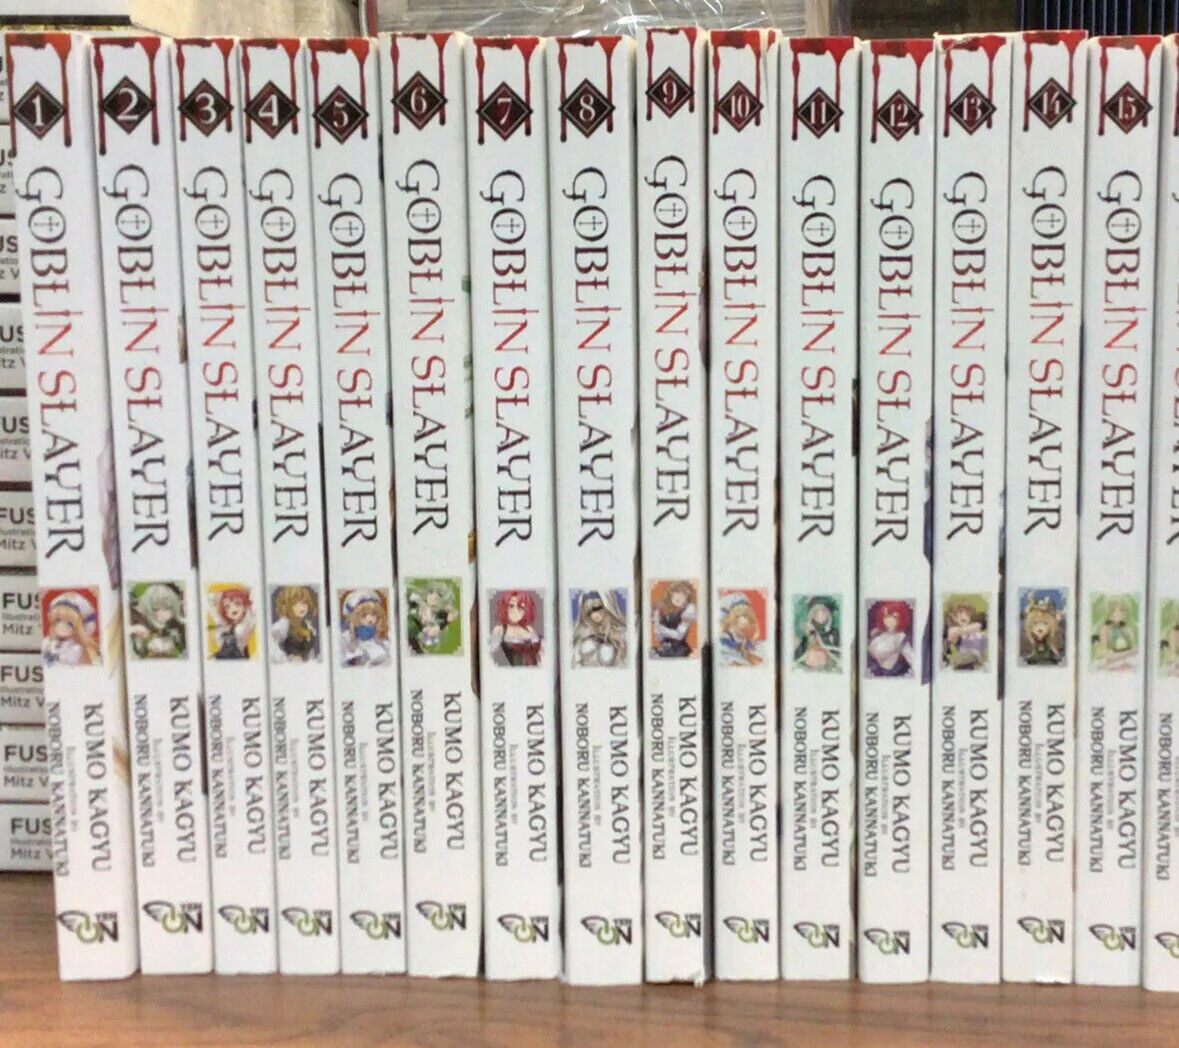 Goblin Slayer Light Novel Collection (v1 - 15)